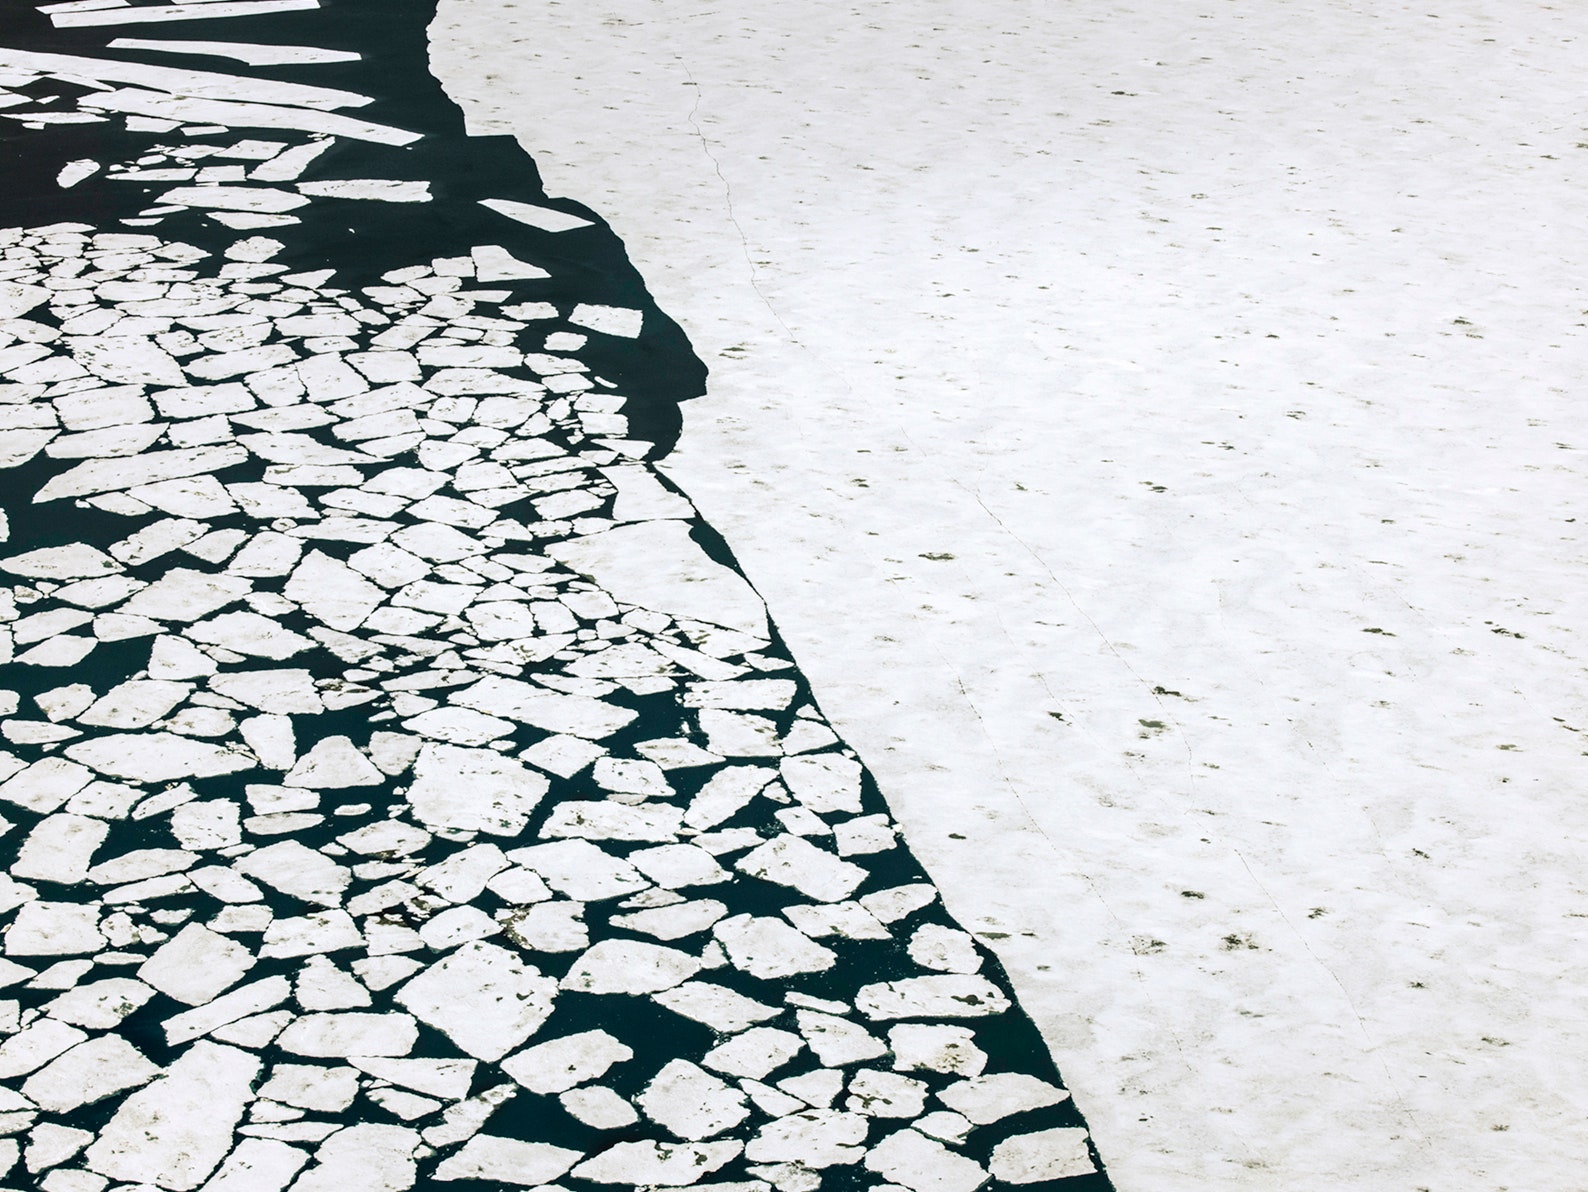 Диана Тафт. Таяние Арктики Гренландское море Северные Ледовитый океан время — 1648 79° северной широты. Из проекта...